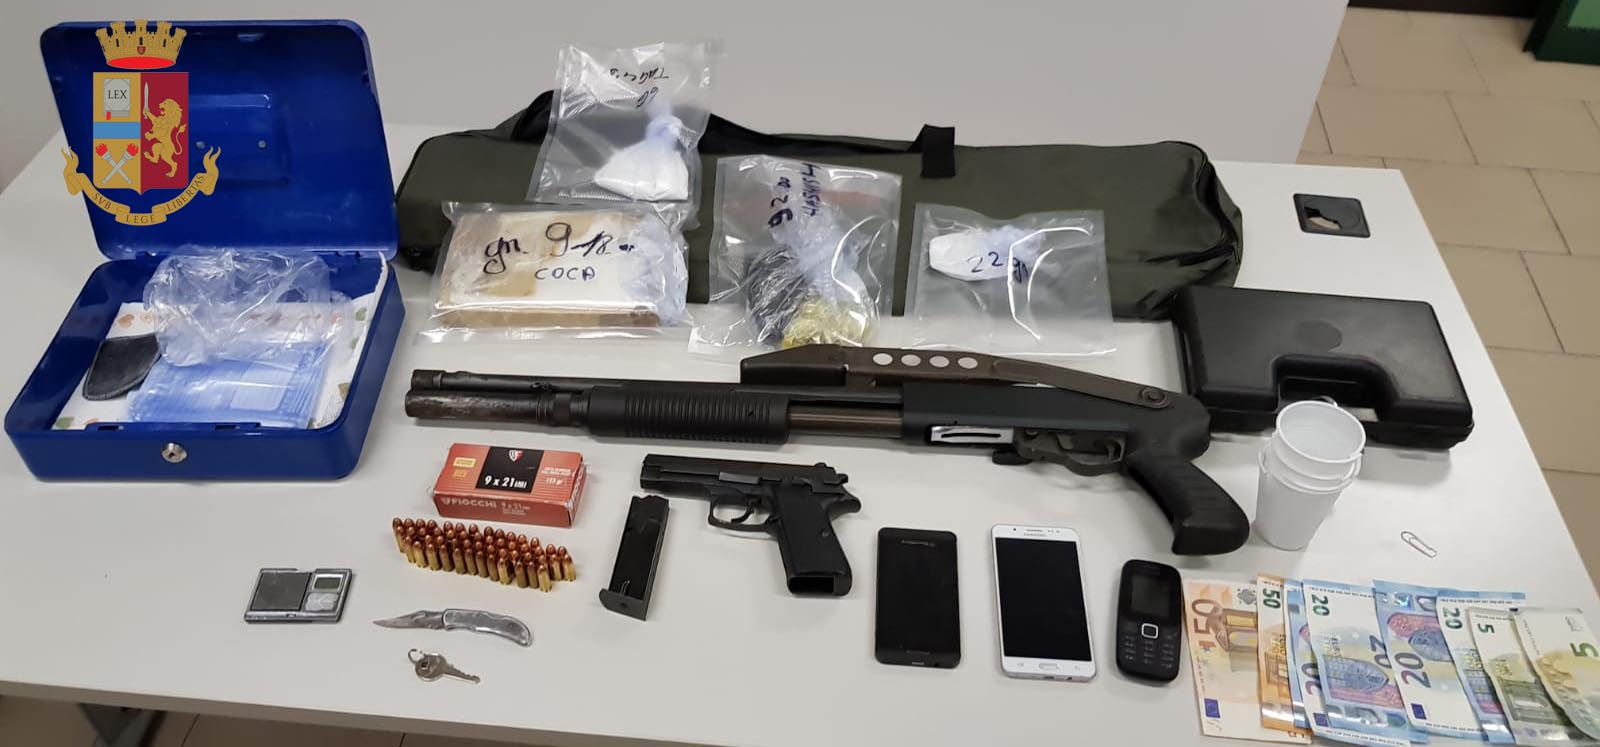 Milano, un chilo di cocaina e un fucile a pompa sotto il letto:  la Polizia di Stato arresta 37enne italiano